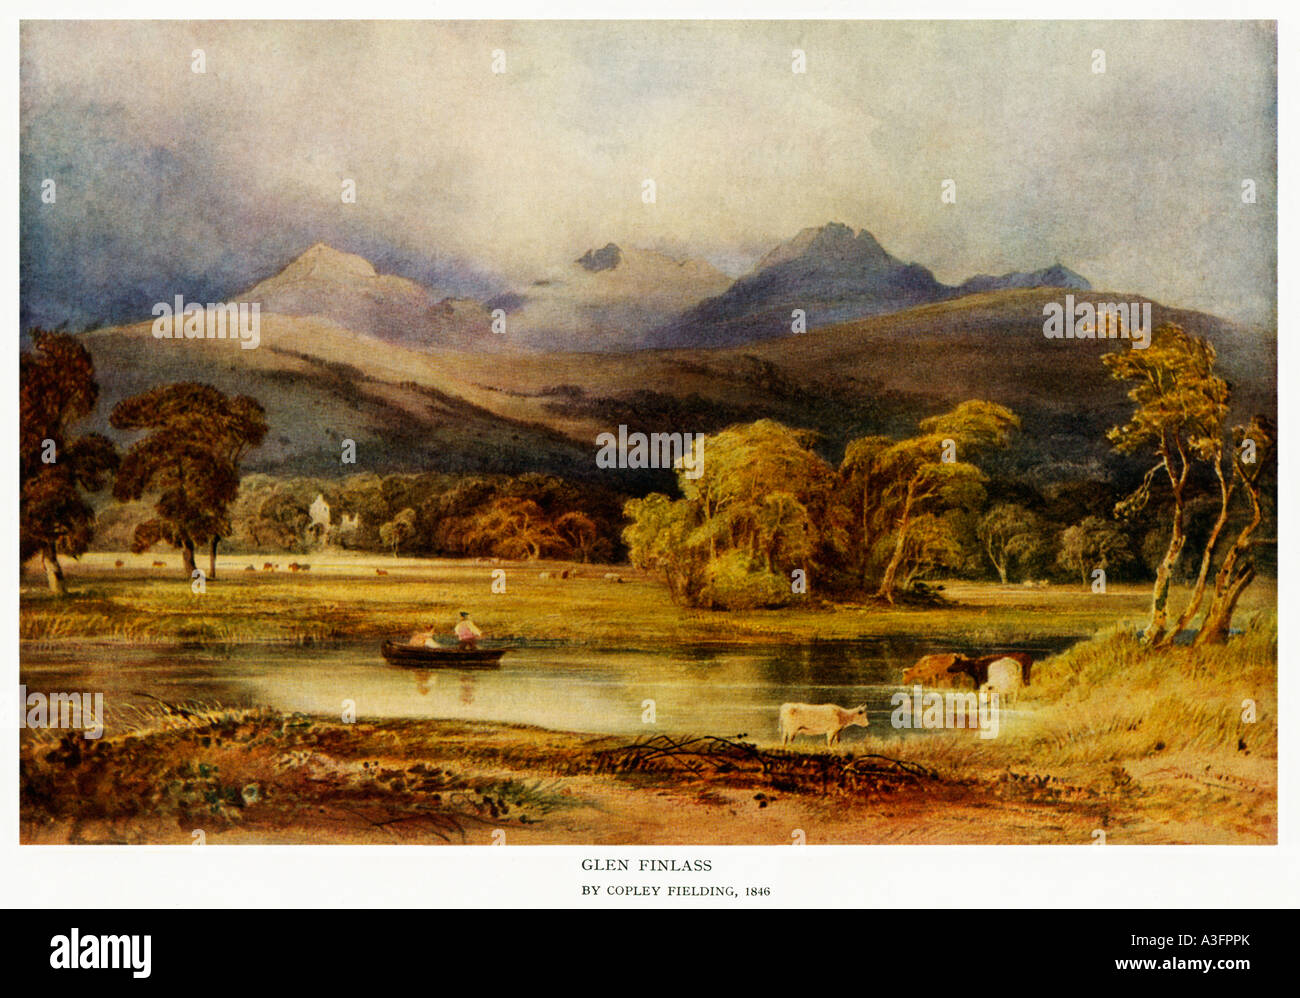 Glen Finlass les Trossachs vus de Loch Lomond dans cette peinture victorienne des Highlands écossais Banque D'Images